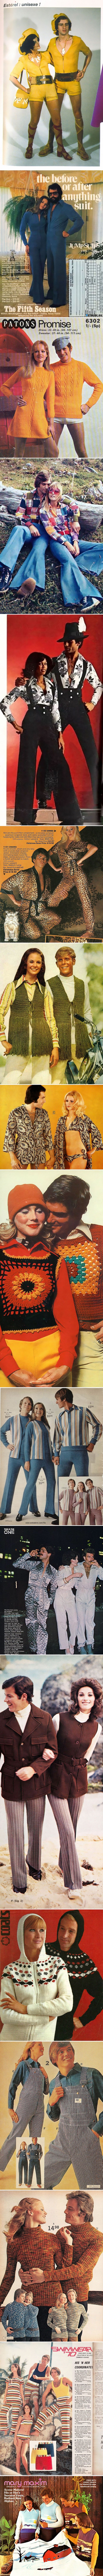 Smiješne modne kombinacije iz 70-ih koje u današnje vrijeme nitko normalan ne bi nosio